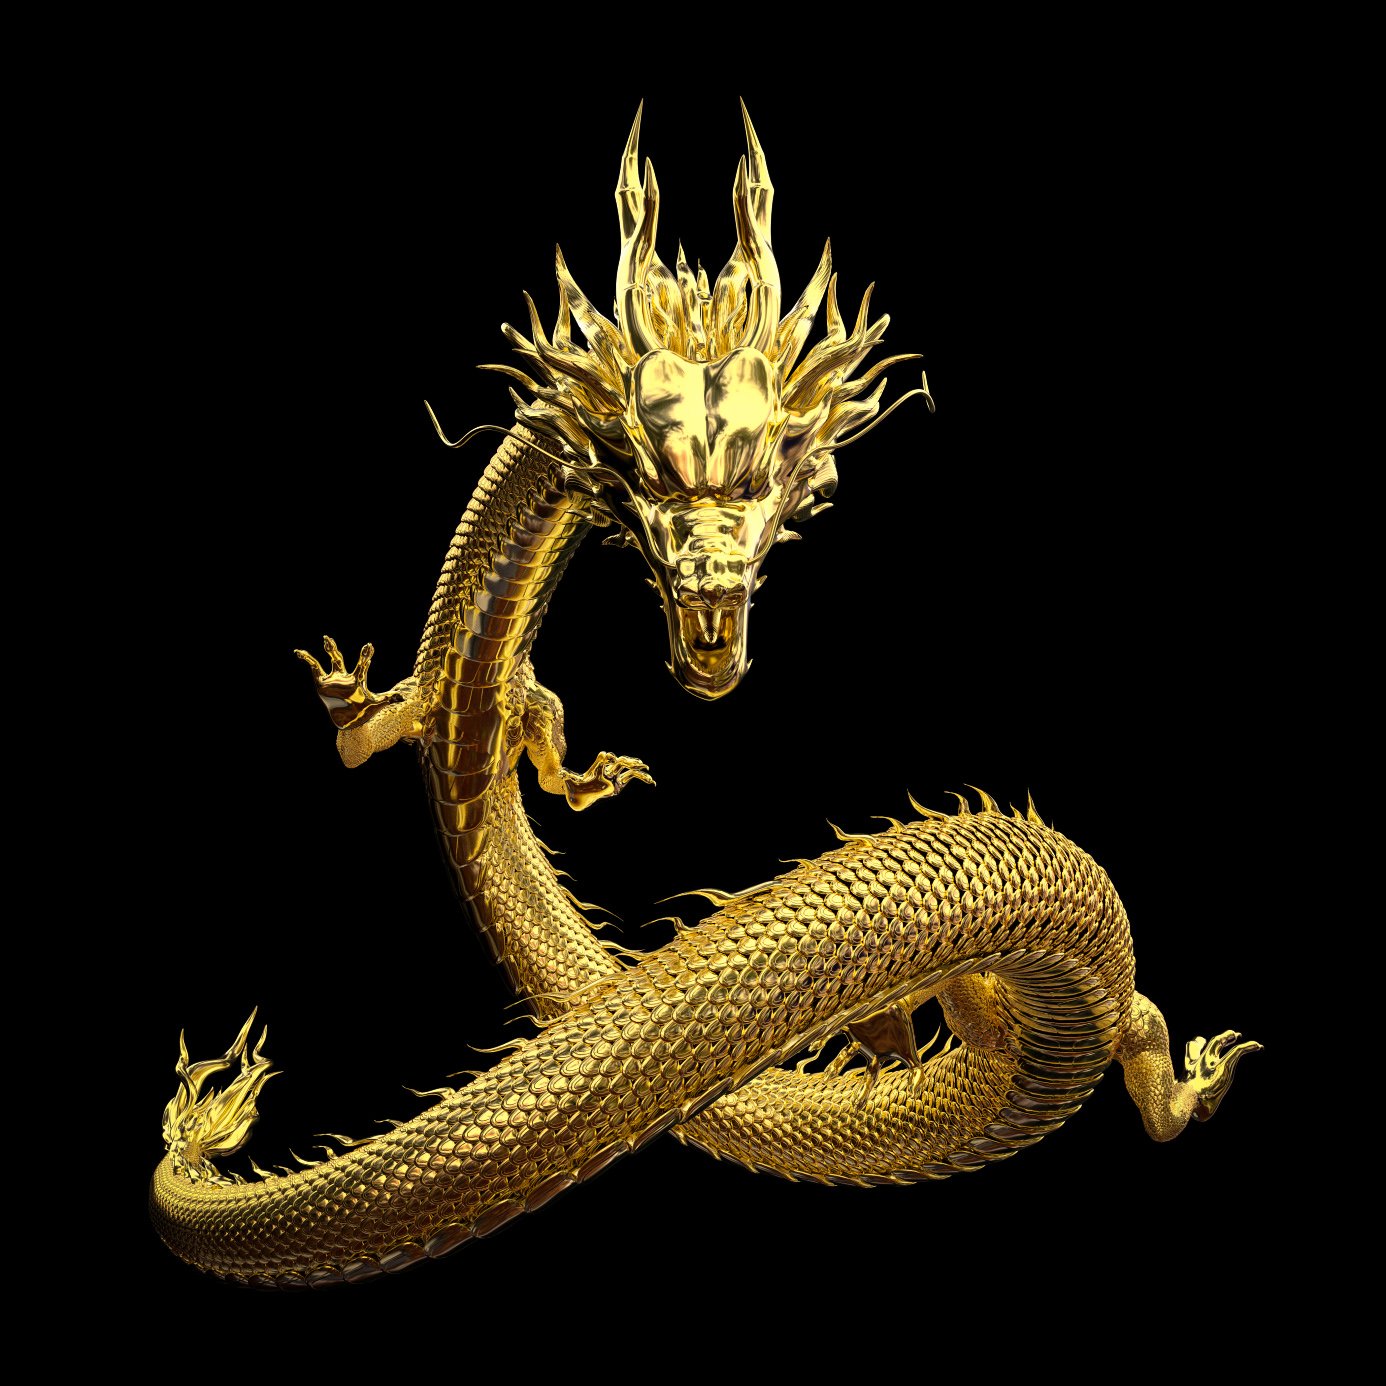 Rồng Trung Quốc, còn được gọi là phổi, là một sinh vật huyền thoại trong thần thoại Trung Quốc.